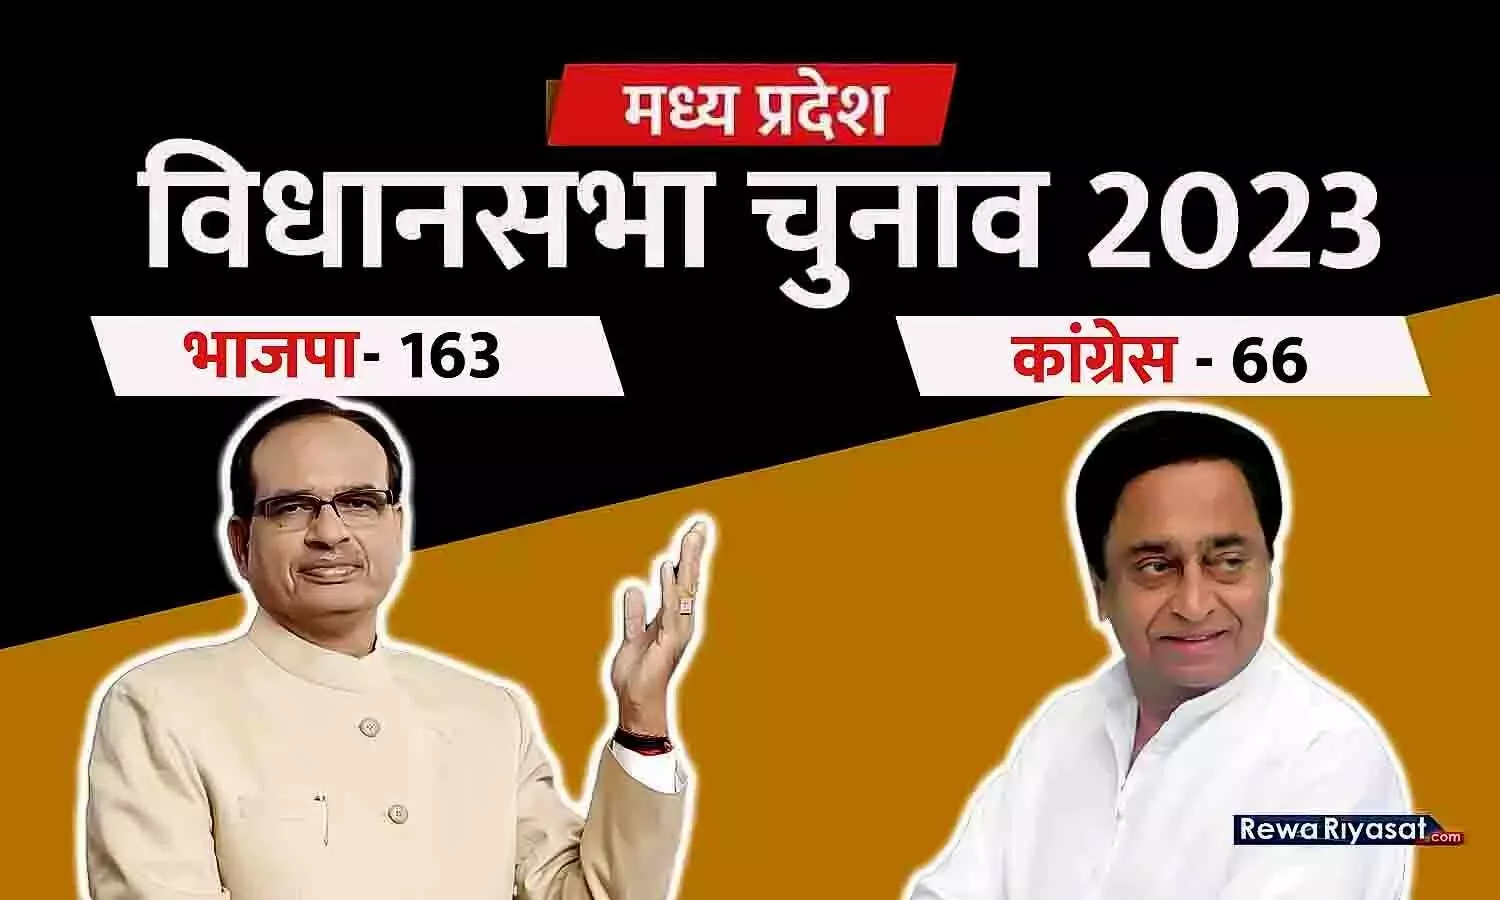 एमपी विधानसभा चुनाव 2023: भाजपा के मेंदोला ने दर्ज की सबसे बड़े अंतर से जीत, 20 विधायक ऐसे जो 50000+ वोट से जीते